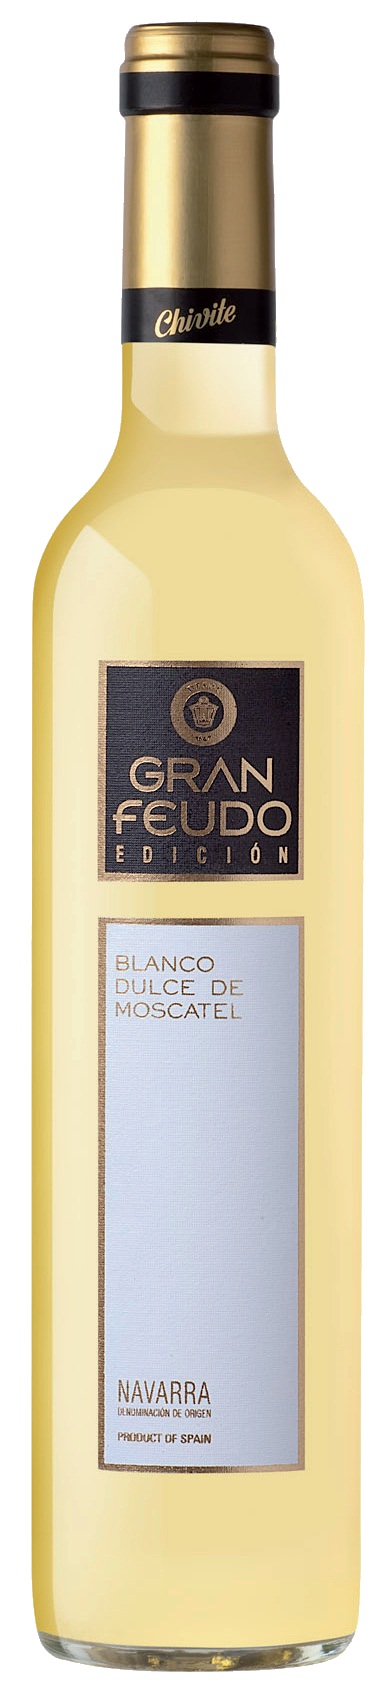 Bild von der Weinflasche Gran Feudo Chivite Blanco de Moscatel